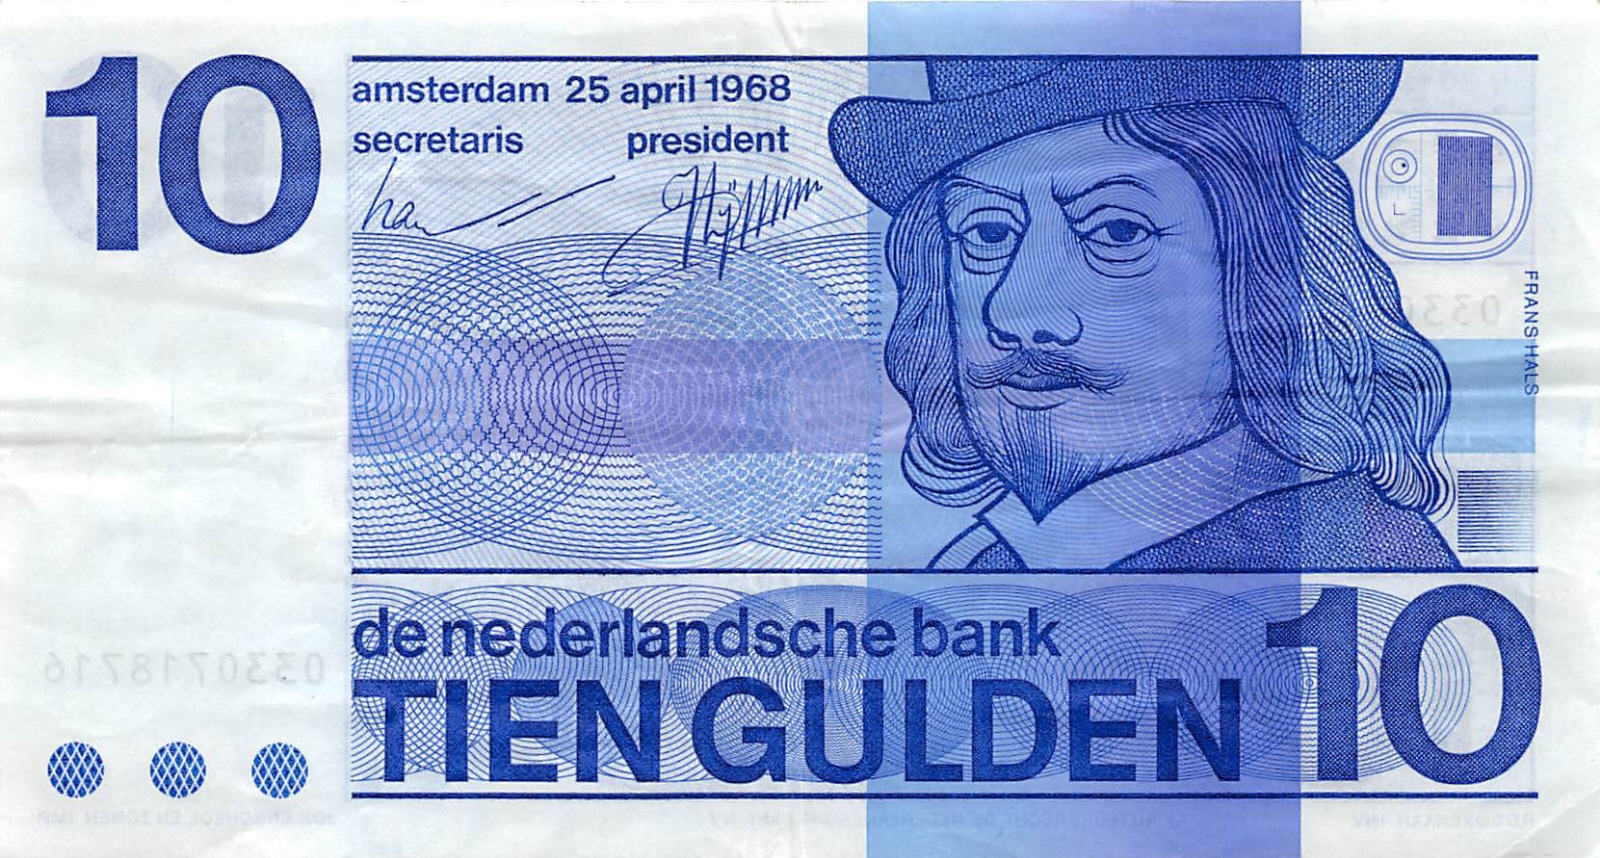 Bankbiljet-van-10-gulden-met-Frans-Hals-verzamelhuis.net_.jpg